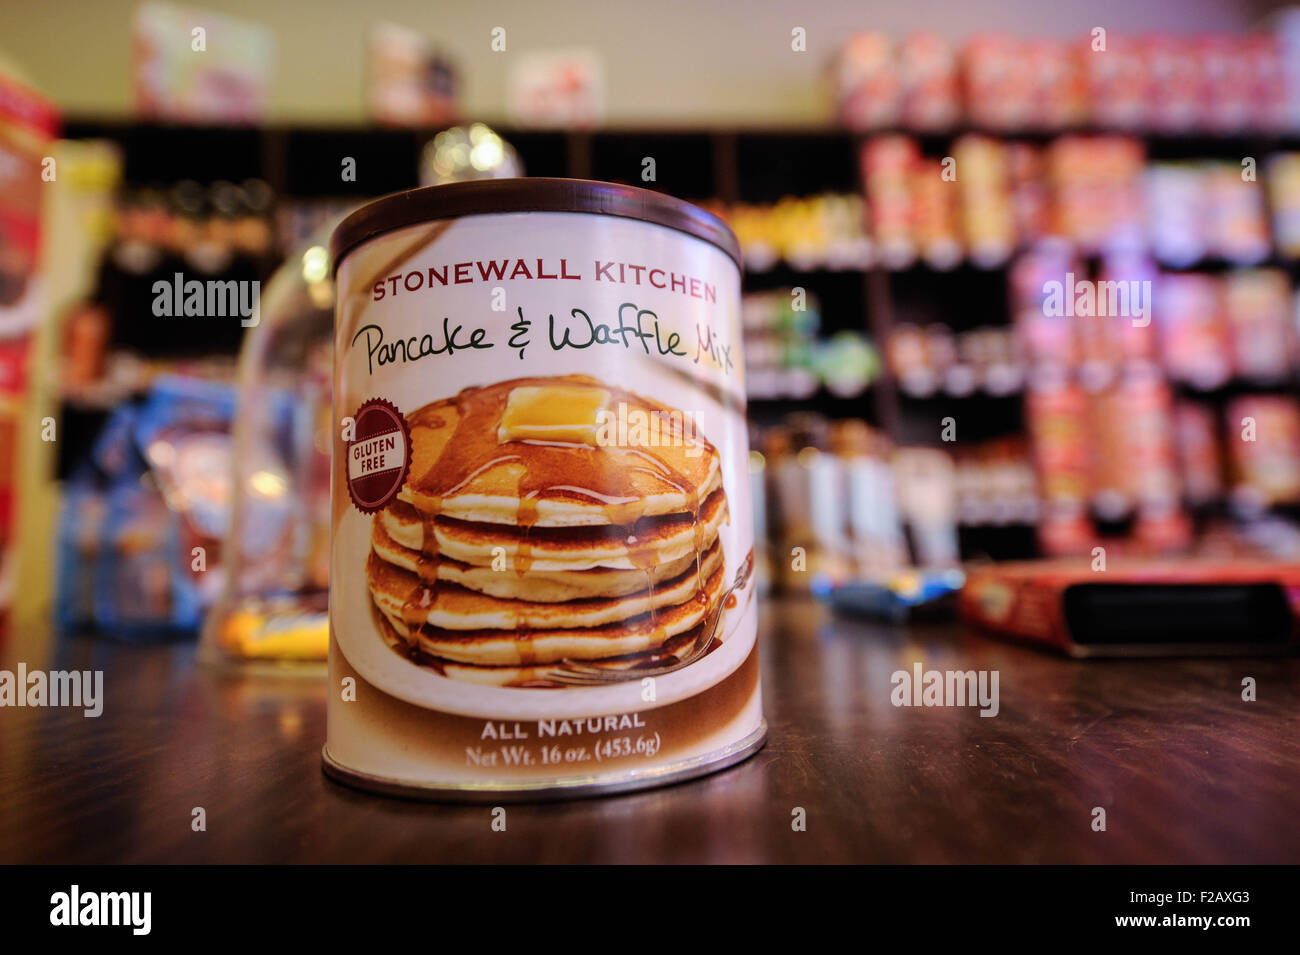 Stonewall Kitchen pancake e waffle Mix- mezcla de tortita gofre y de Stonewall kitchen Foto Stock